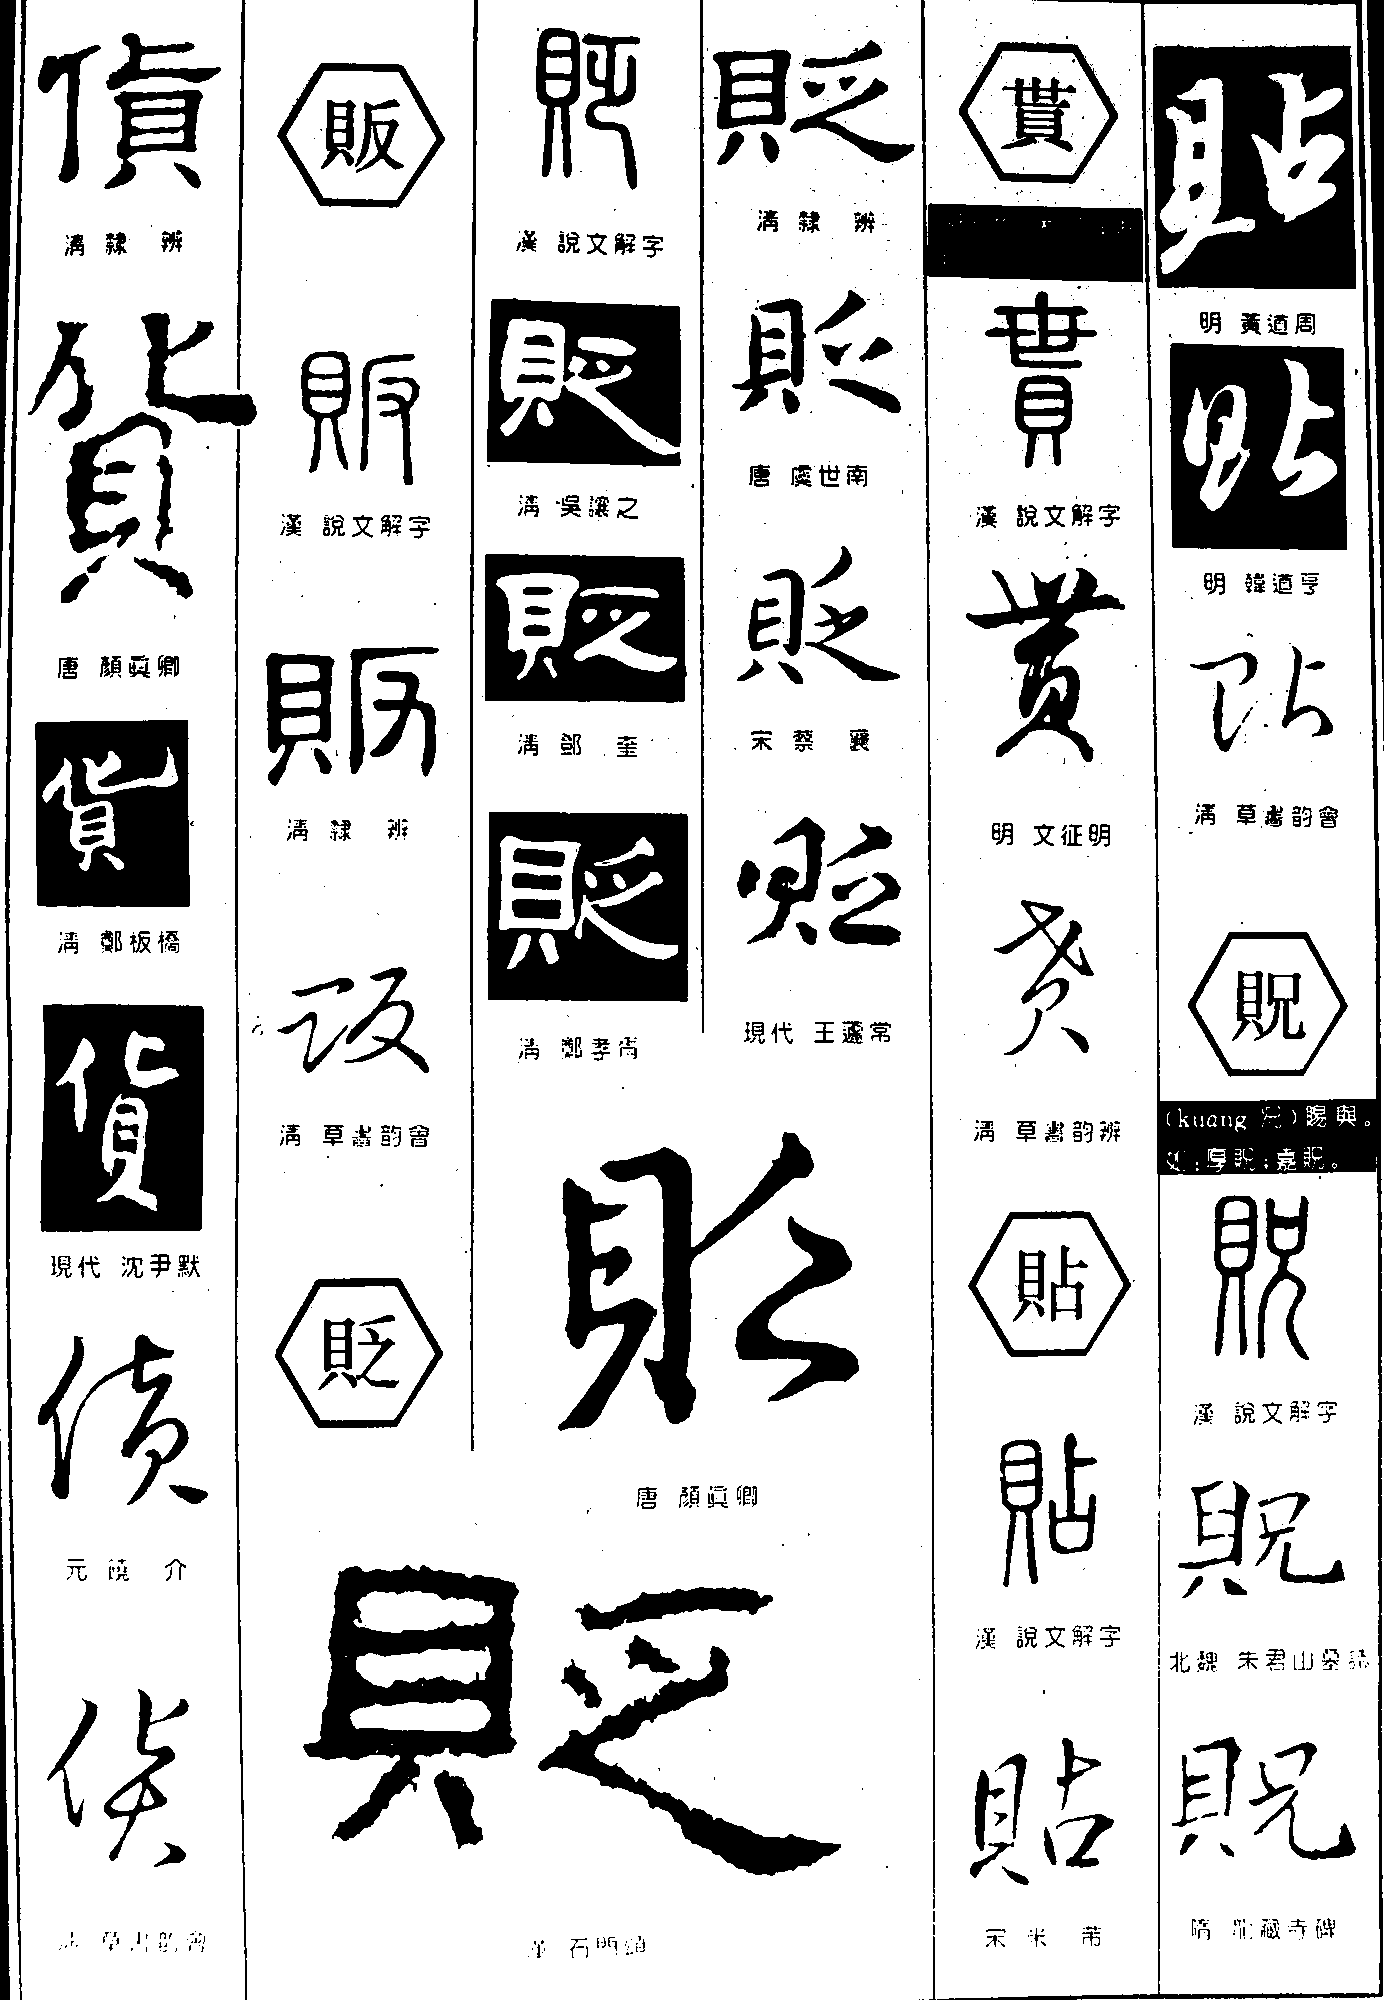 货贩贬贳贶 艺术字 毛笔字 书法字 繁体 标志设计